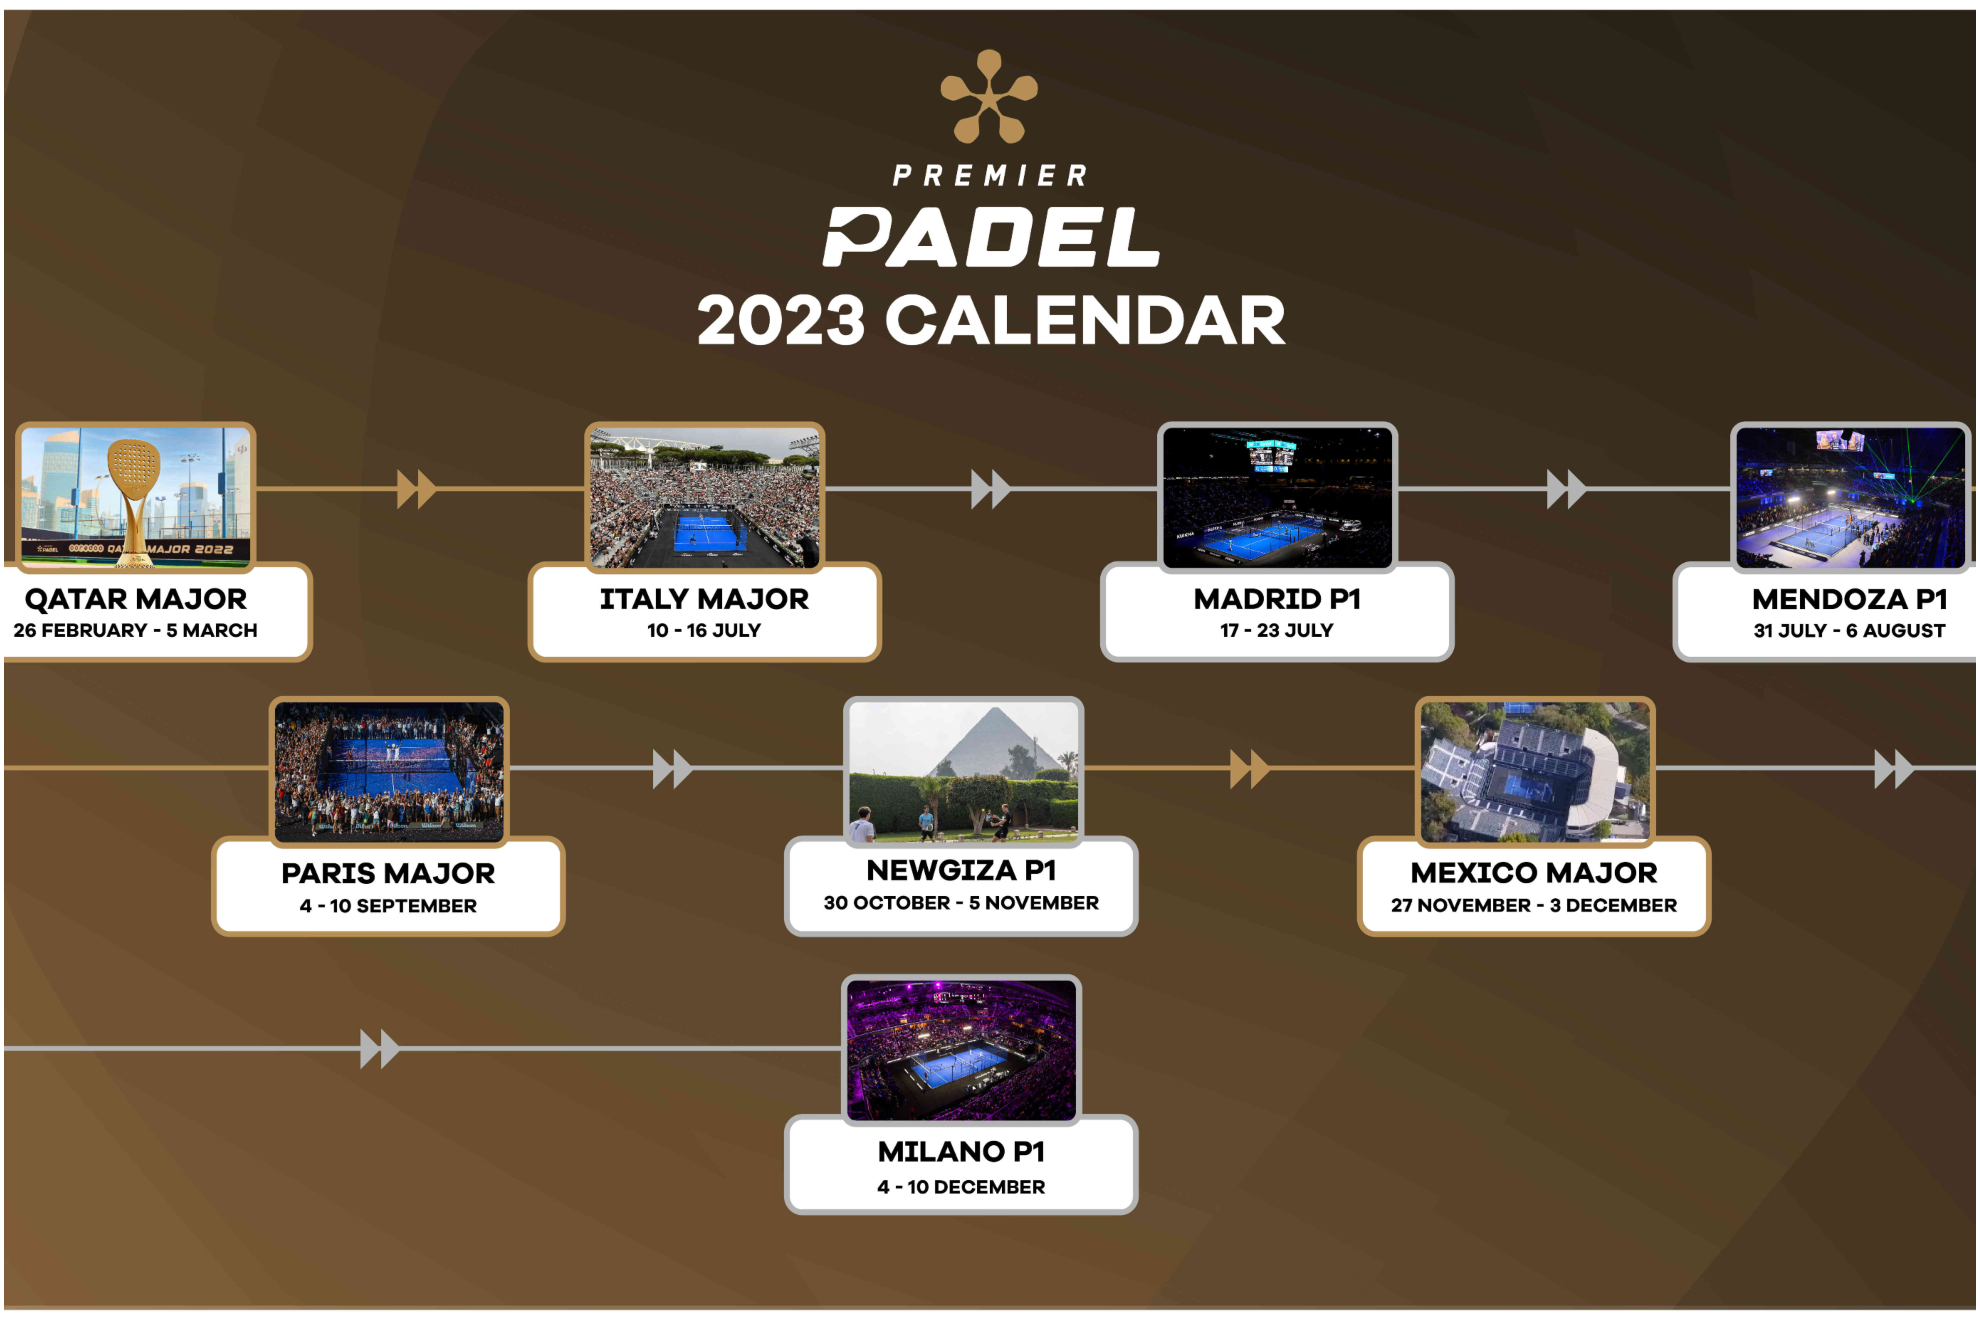 Pádel Premier Padel presenta su calendario 2023 con ocho torneos como mínimo Marca